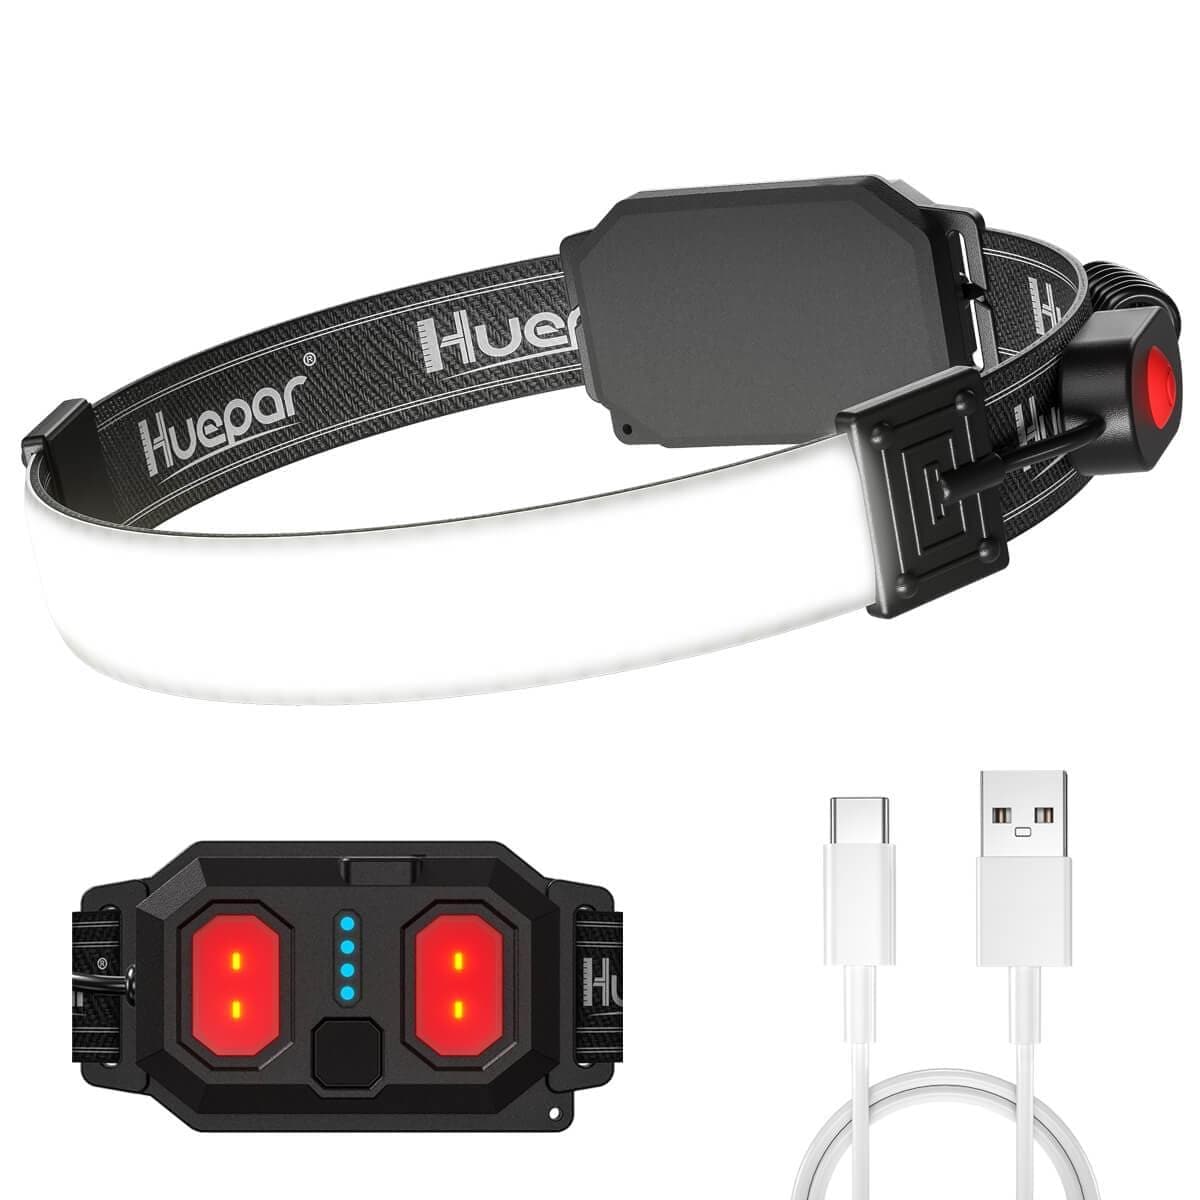 Huepar HL01 - 500 Lumens LED Headlamp - HUEPAR US